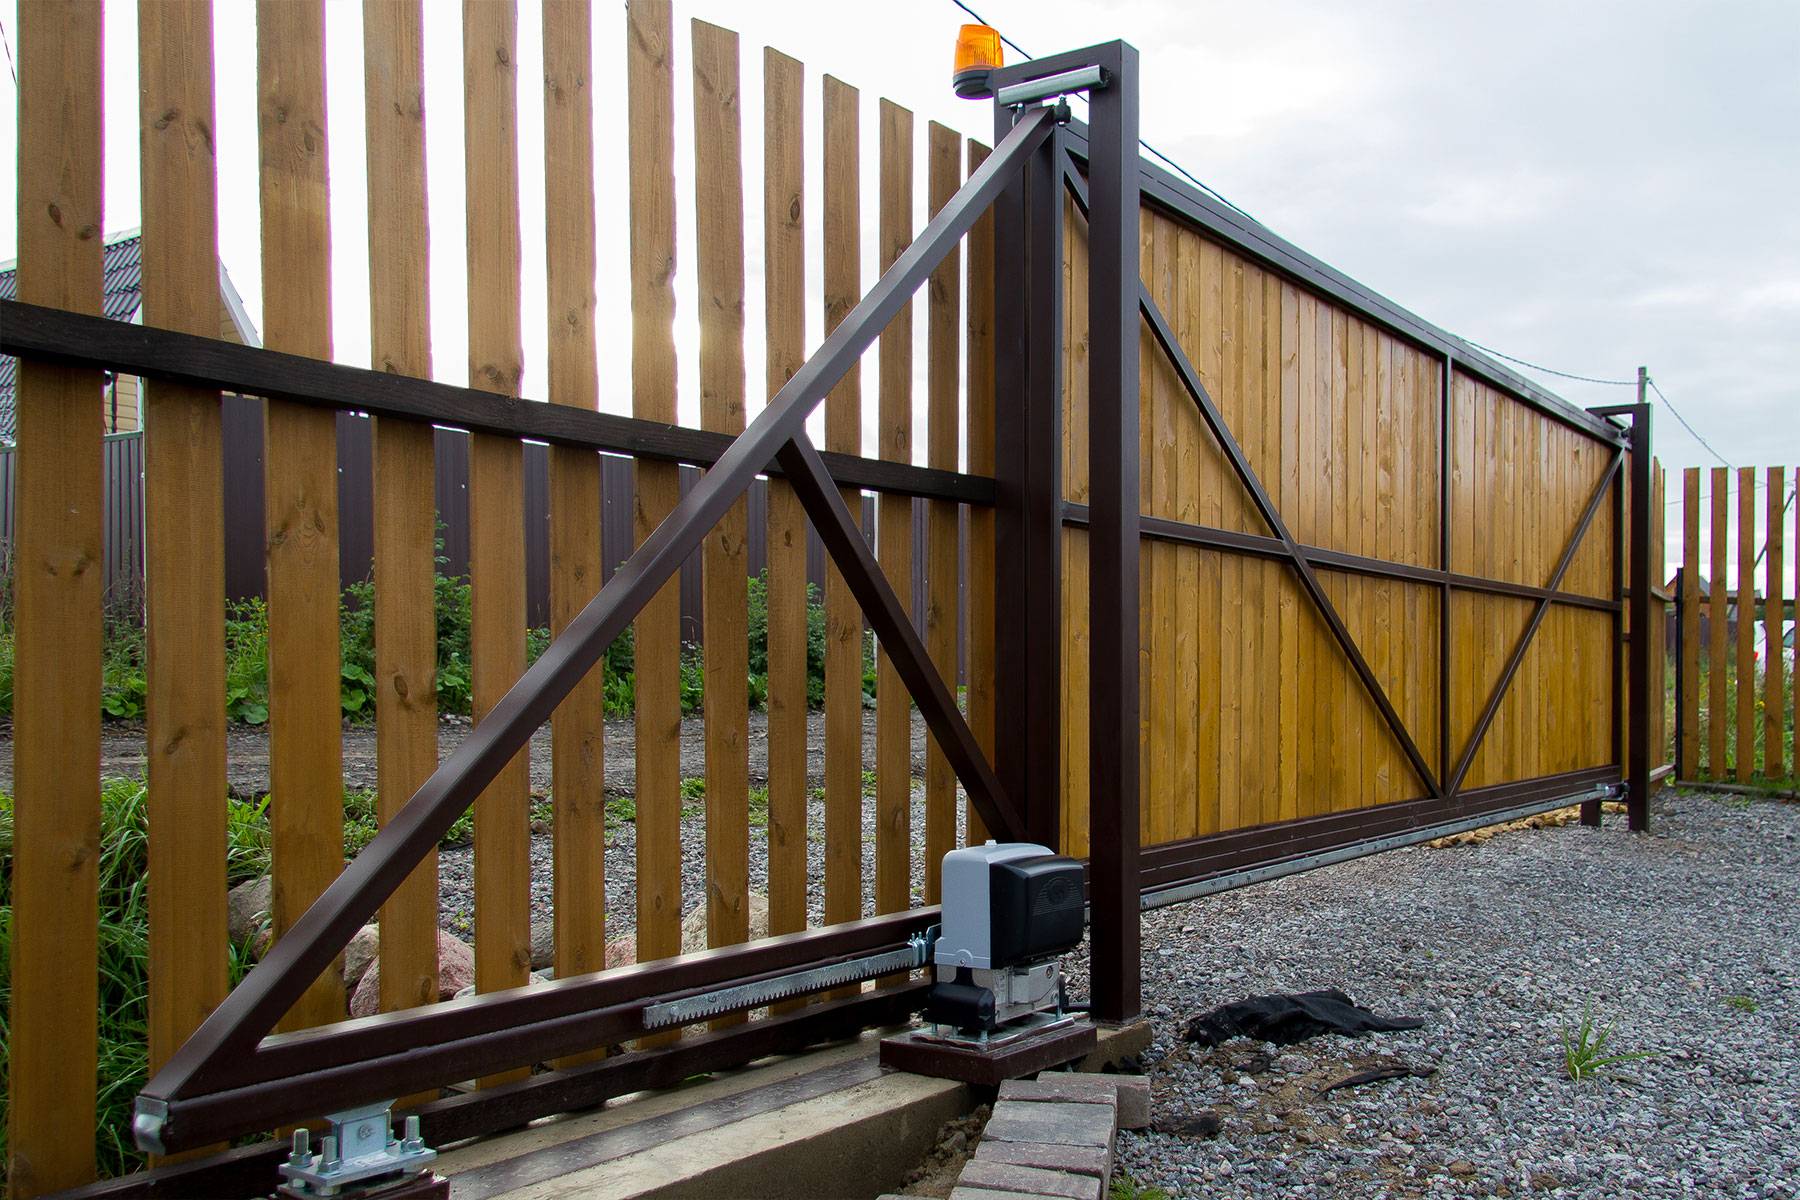 Пошаговое руководство: как сделать откатные ворота на даче или загородном участке